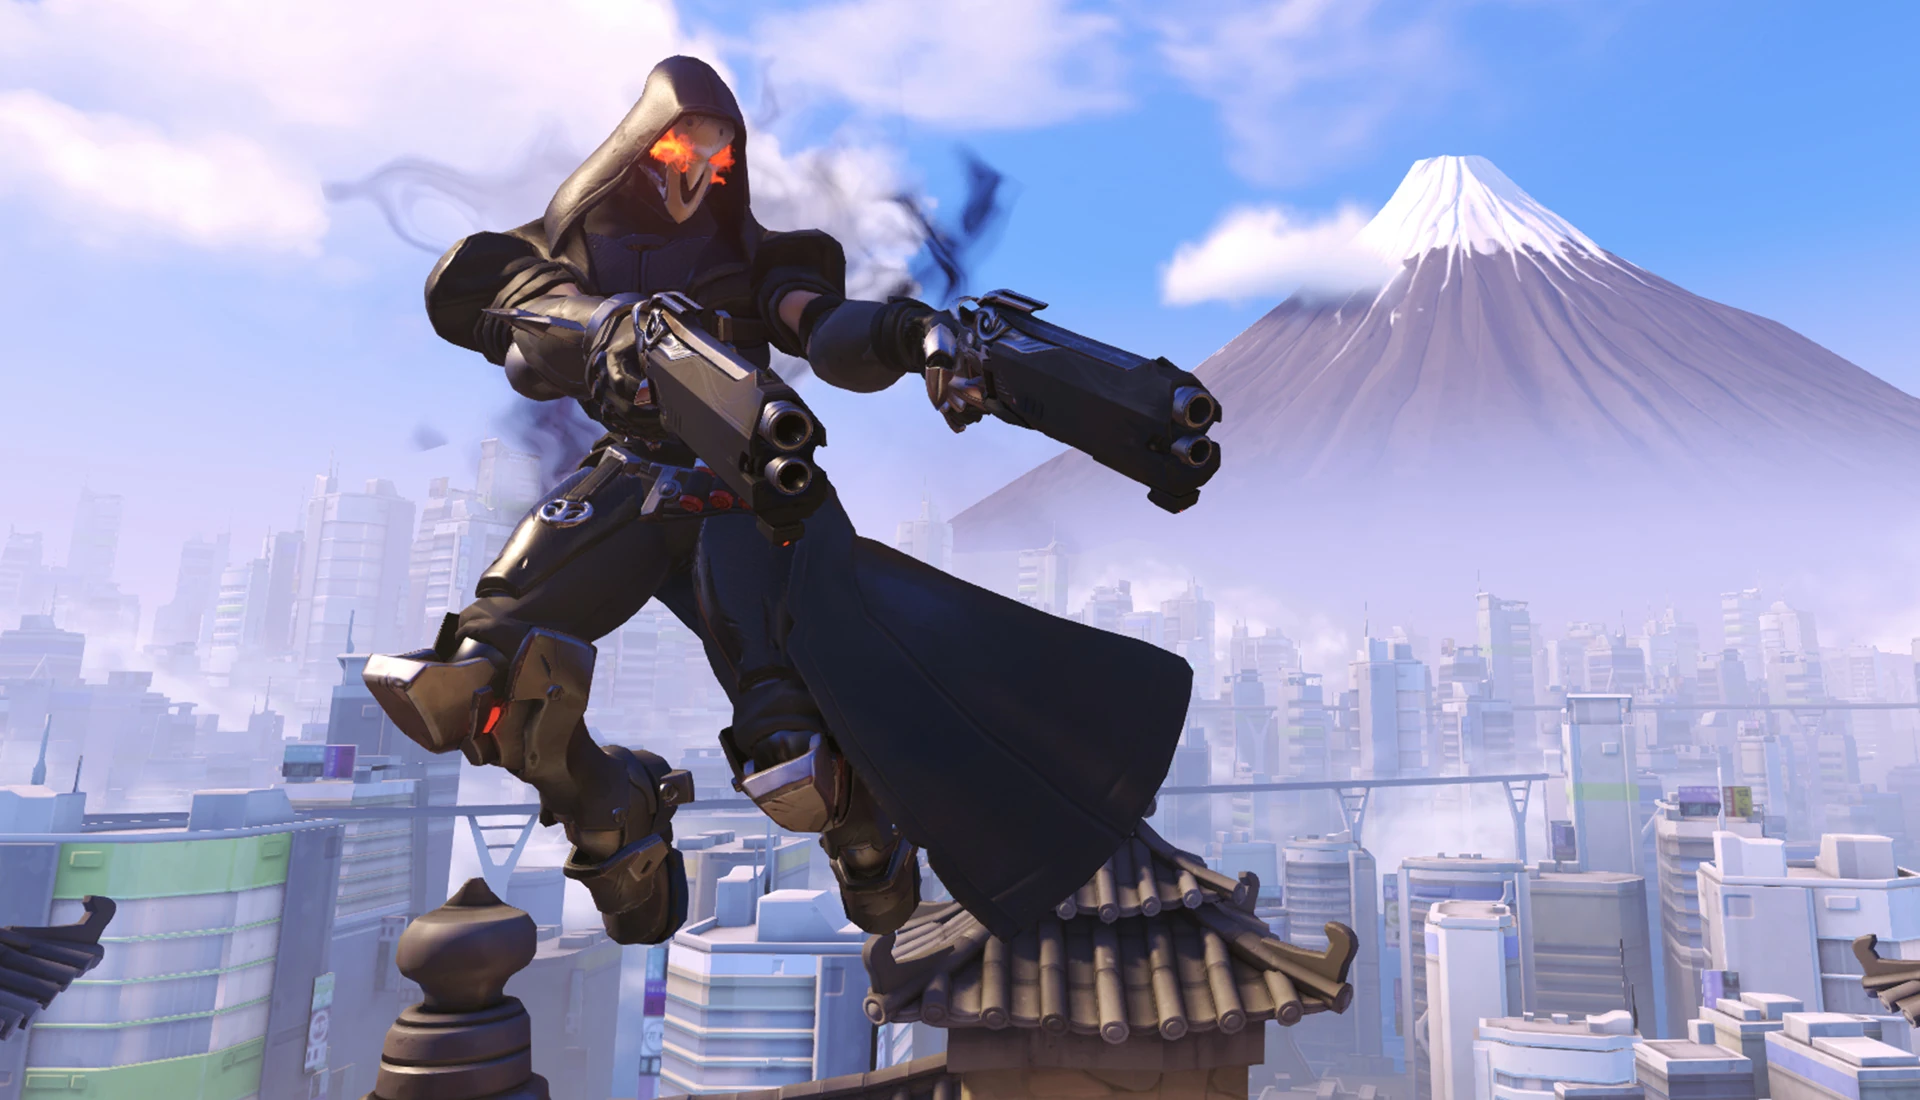 Overwatch - Reaper - Imagem do personagem